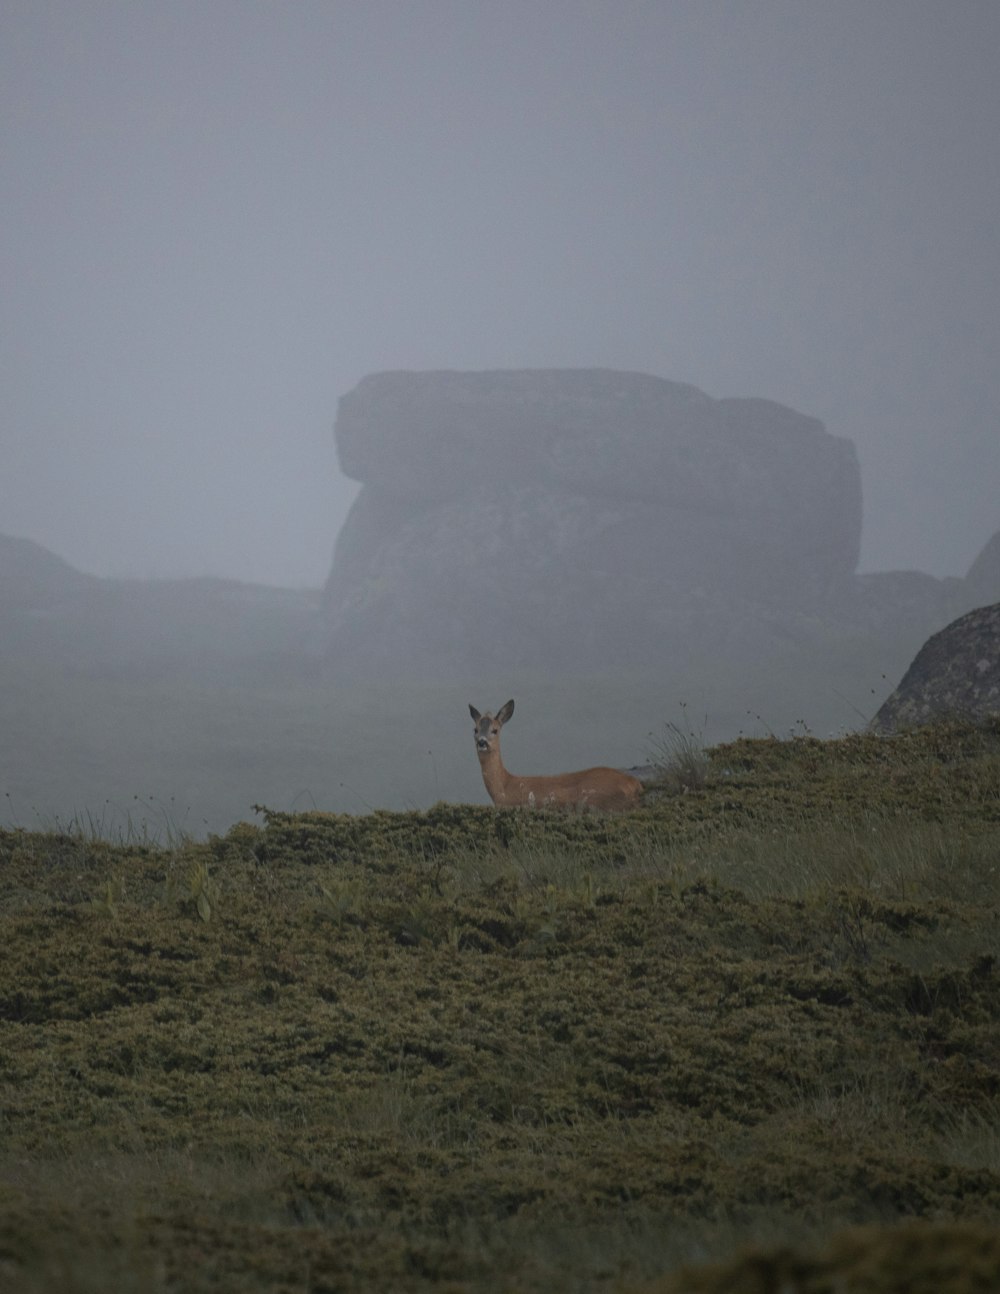 a deer is standing in a foggy field